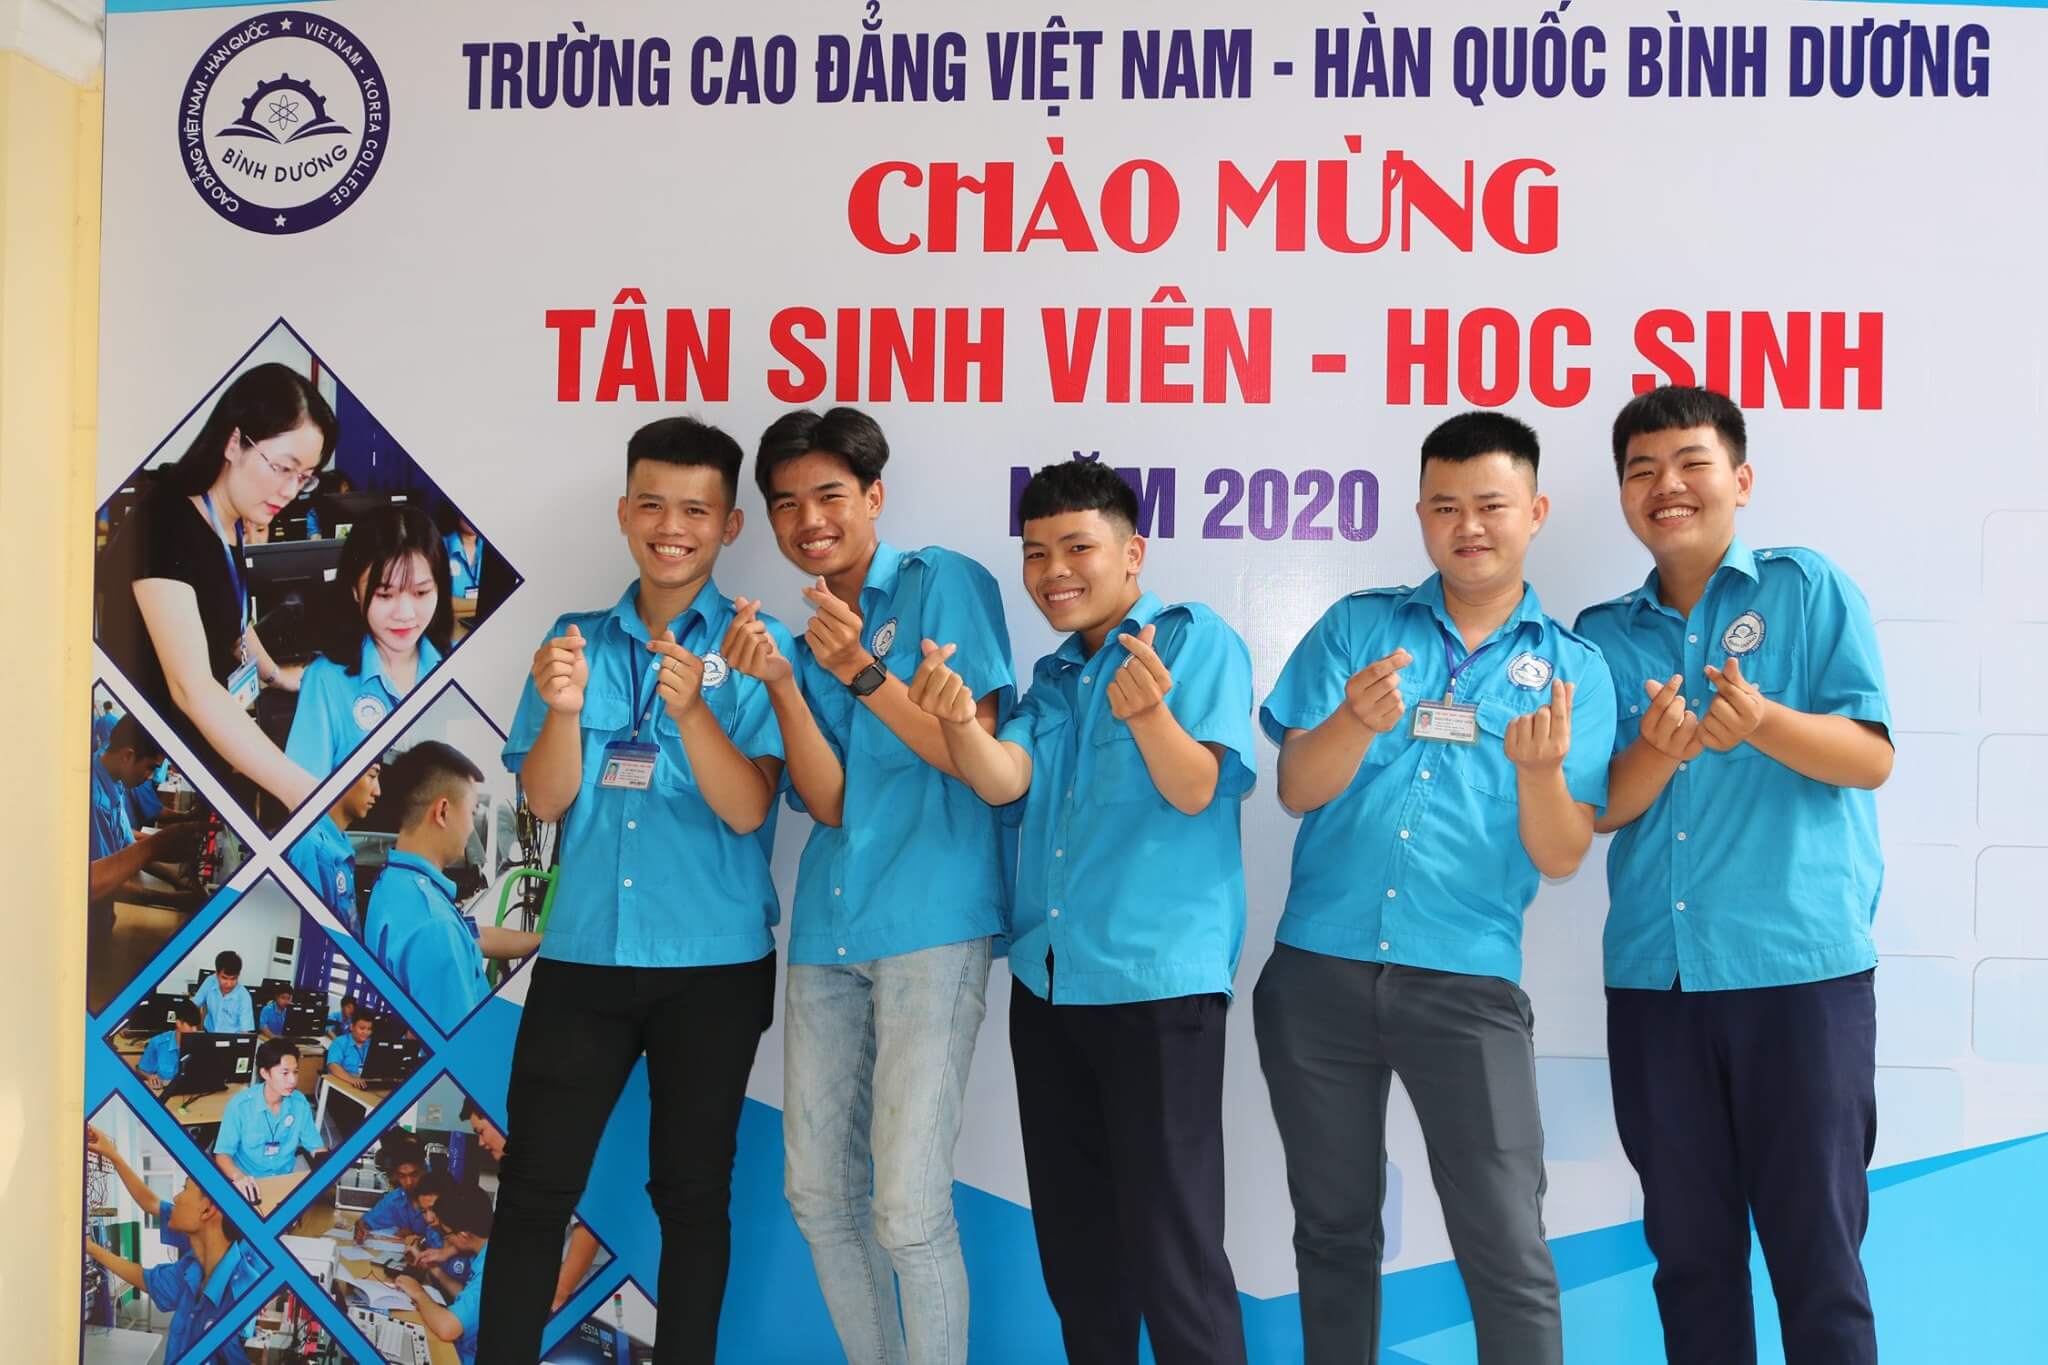 Trường Cao đẳng Việt Nam - Hàn Quốc Bình Dương